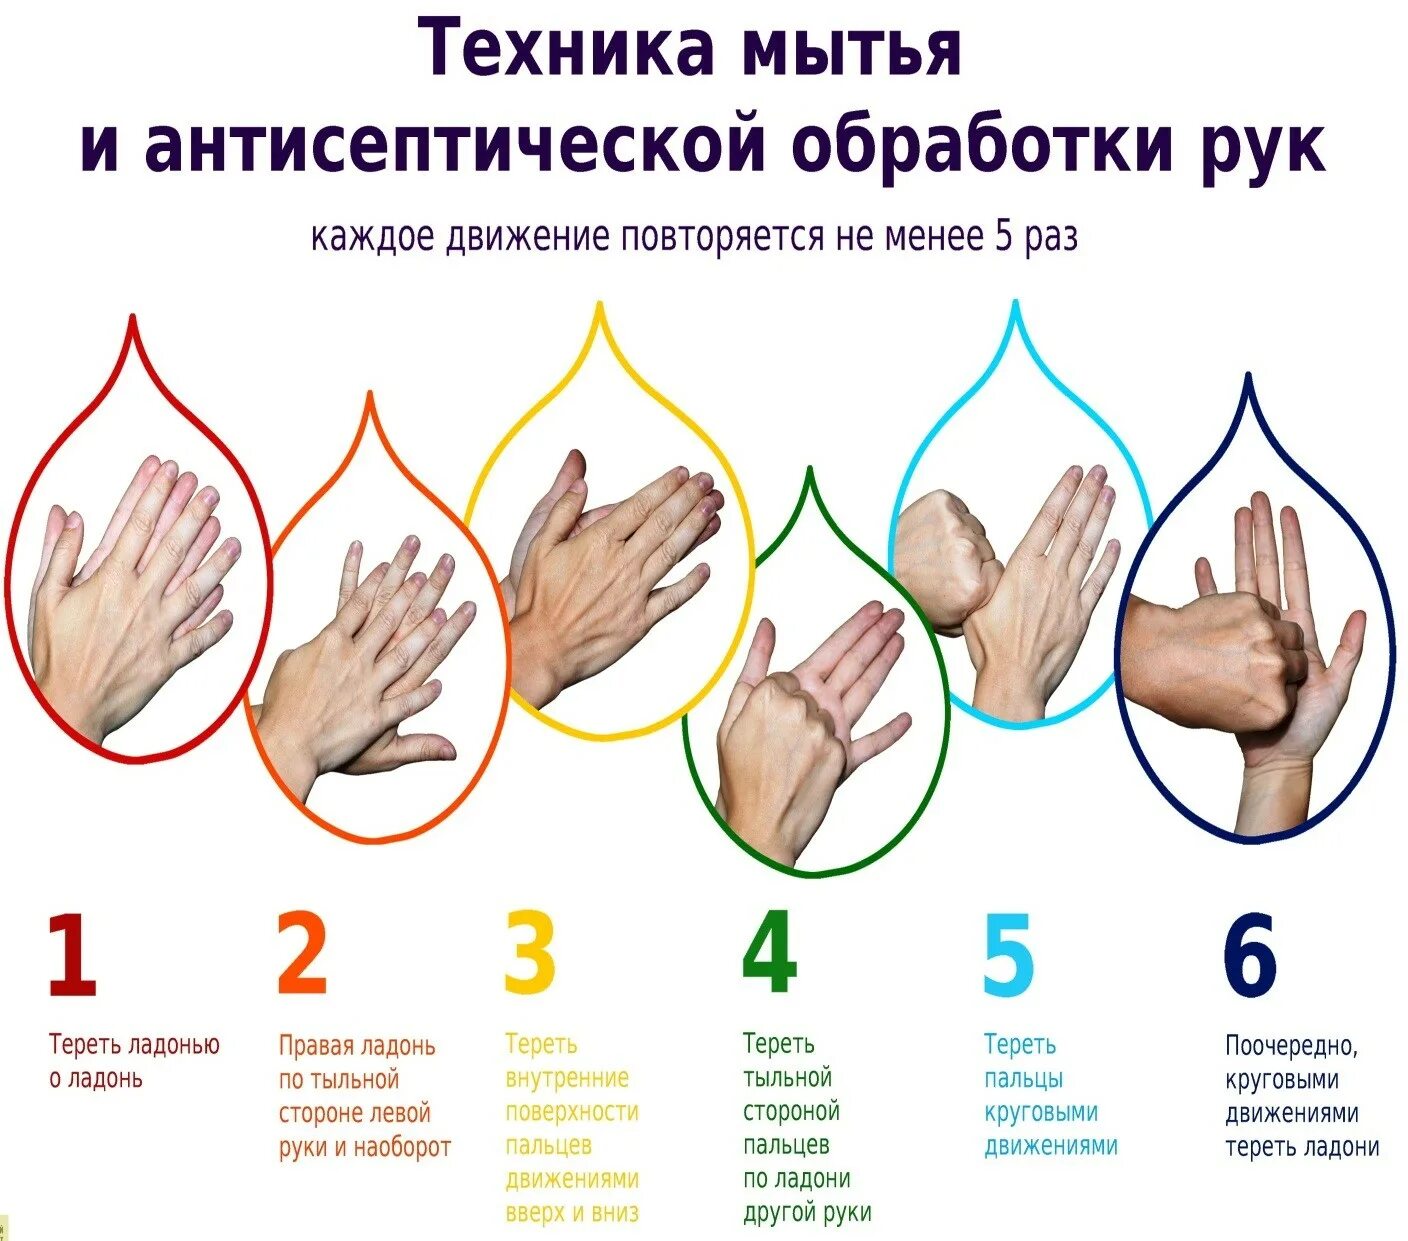 Во время мытья рук необходимо гигтест. Обработка рук гигиеническим способом. Гигиеническая обработка рук антисептиком медперсонала. Гигиеническая обработка рук кожным антисептиком проводится. Гигиенический метод мытья рук.